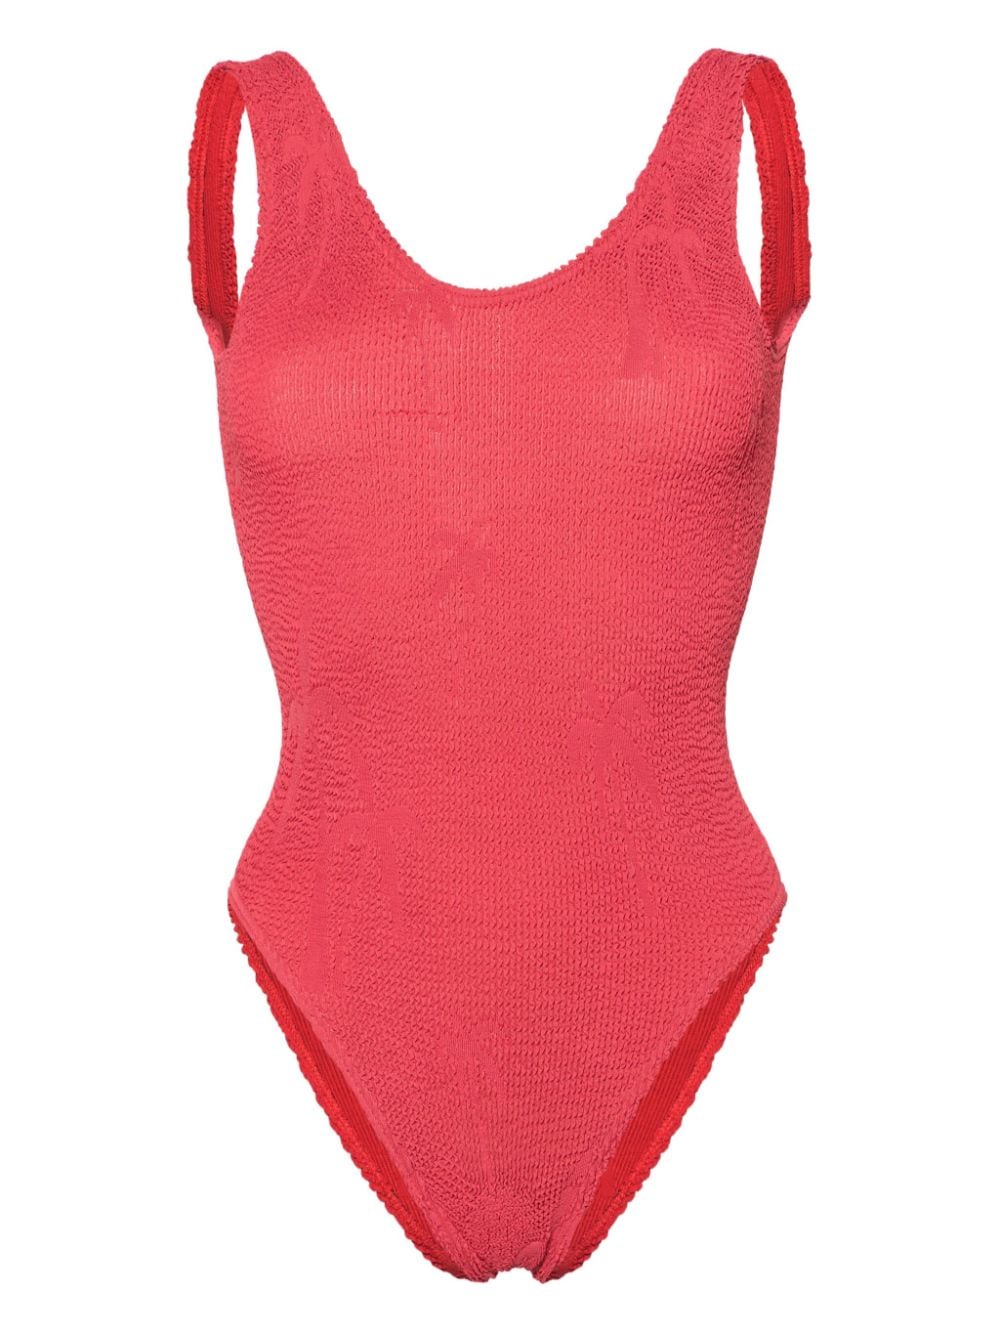 Bondeye Mara Open-back Swimsuit In Red